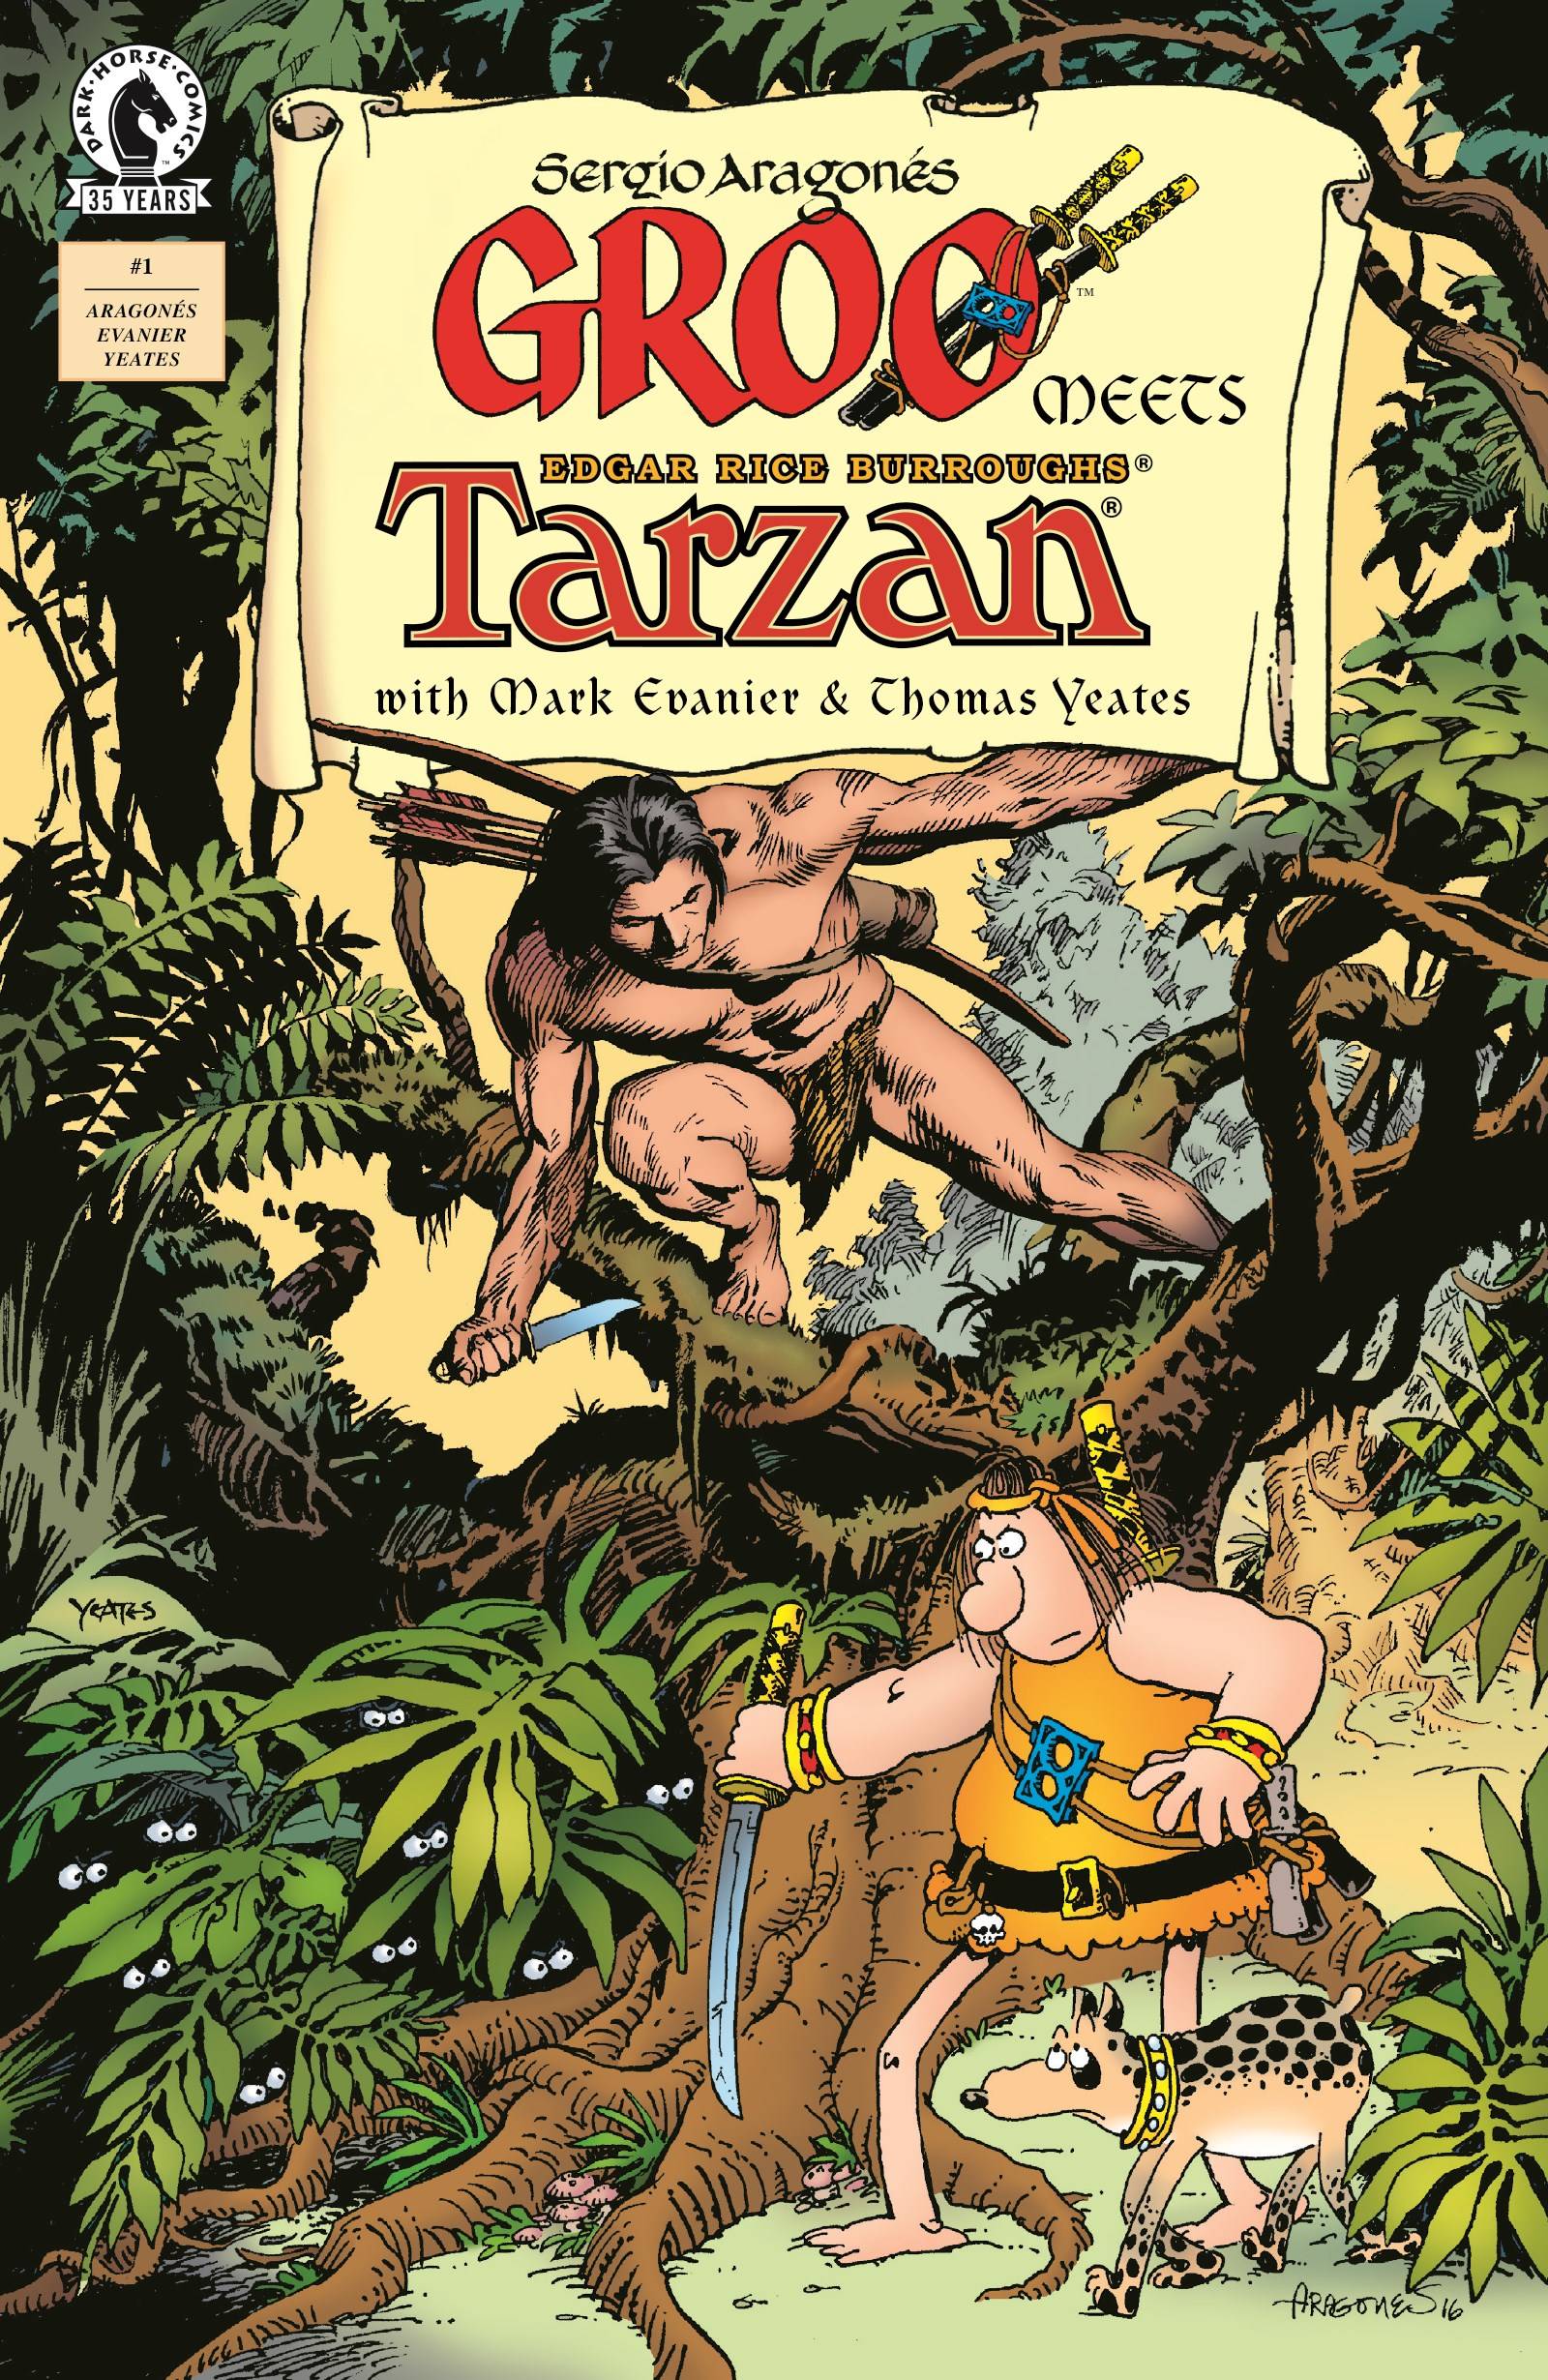 GROO MEETS TARZAN #1 (OF 4) | L.A. Mood Comics and Games